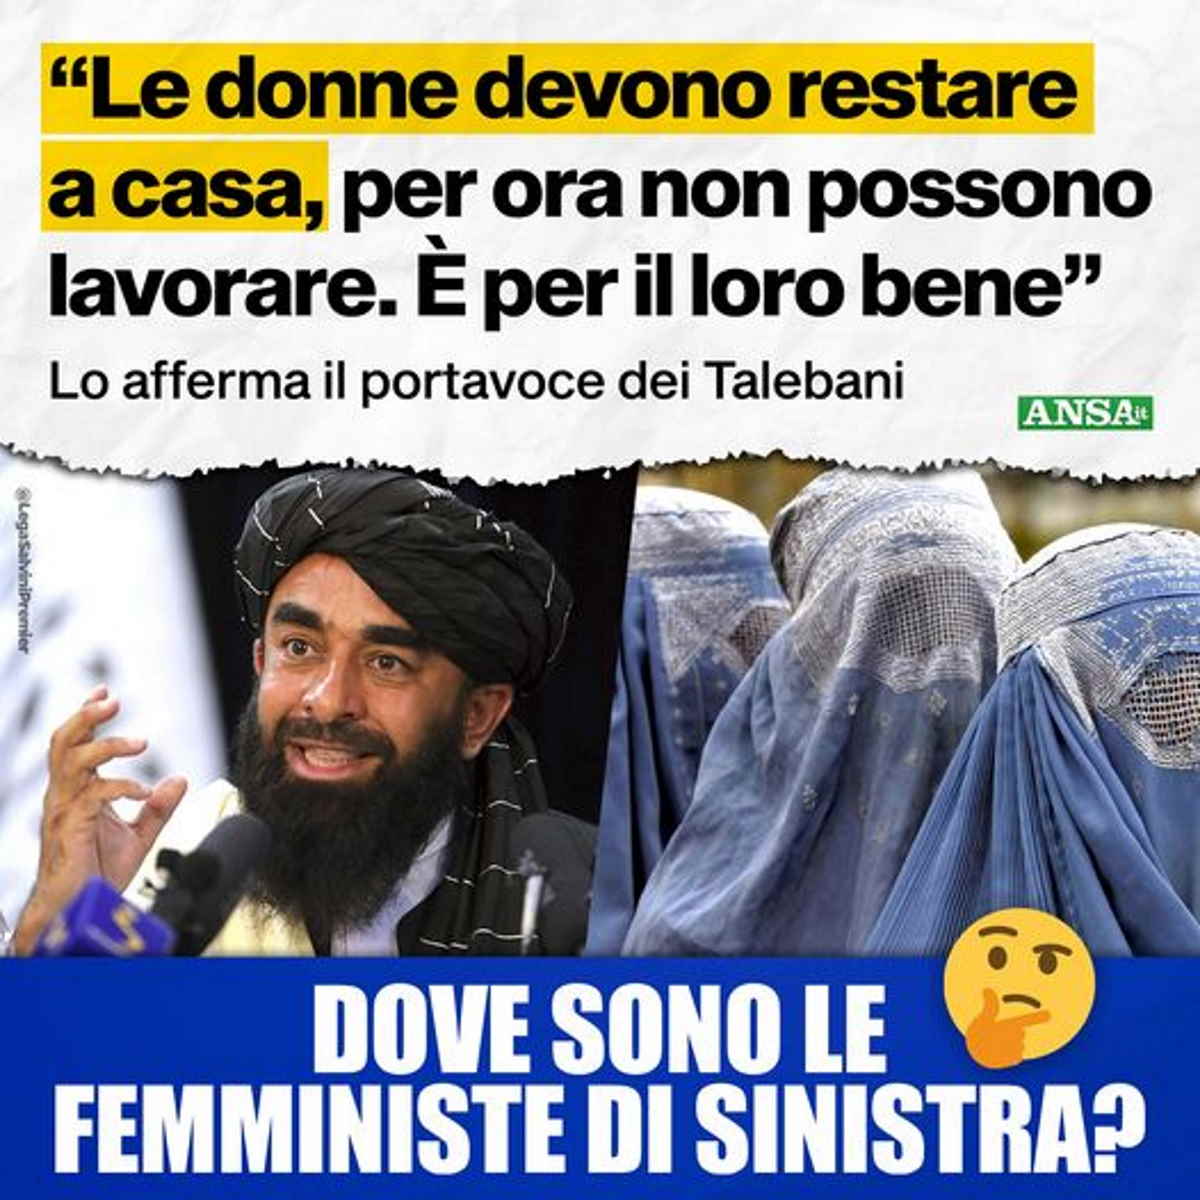 I talebani e le femministe di sinistra... secondo Salvini!